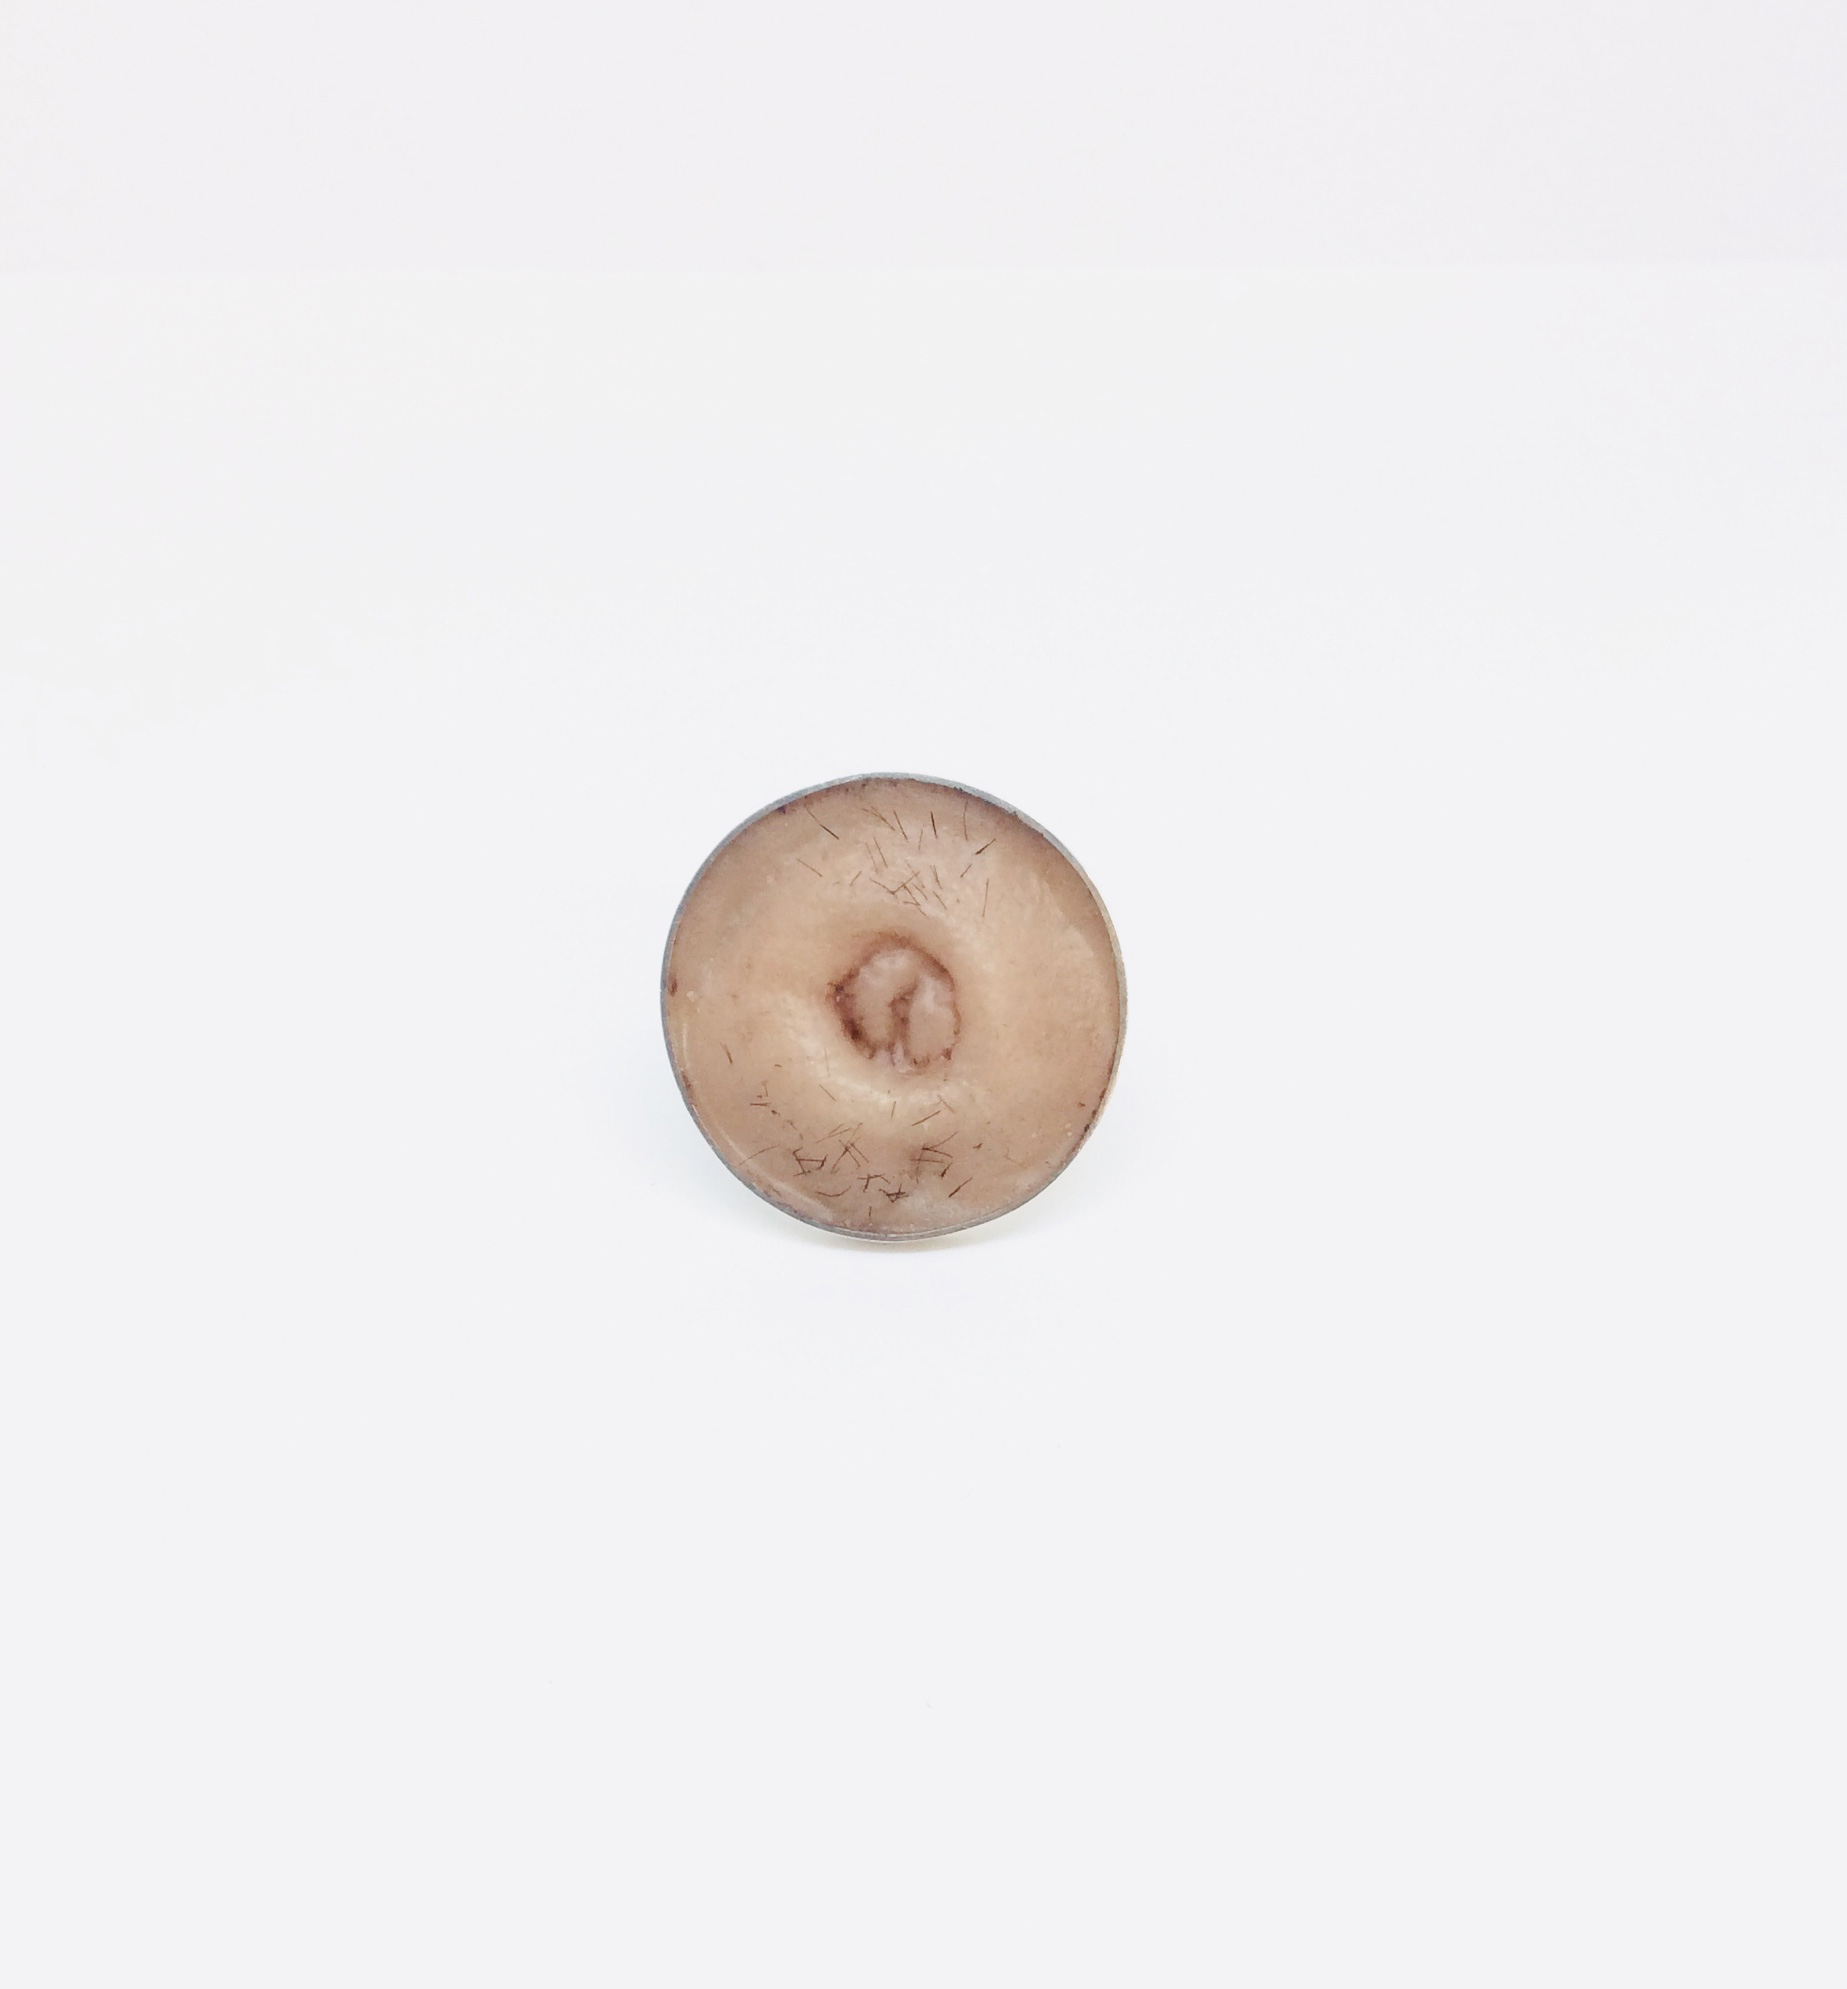 Une histoire au masculin - Broche nombril. Argent 925, silicone et poil humain - 4 cm - 2019